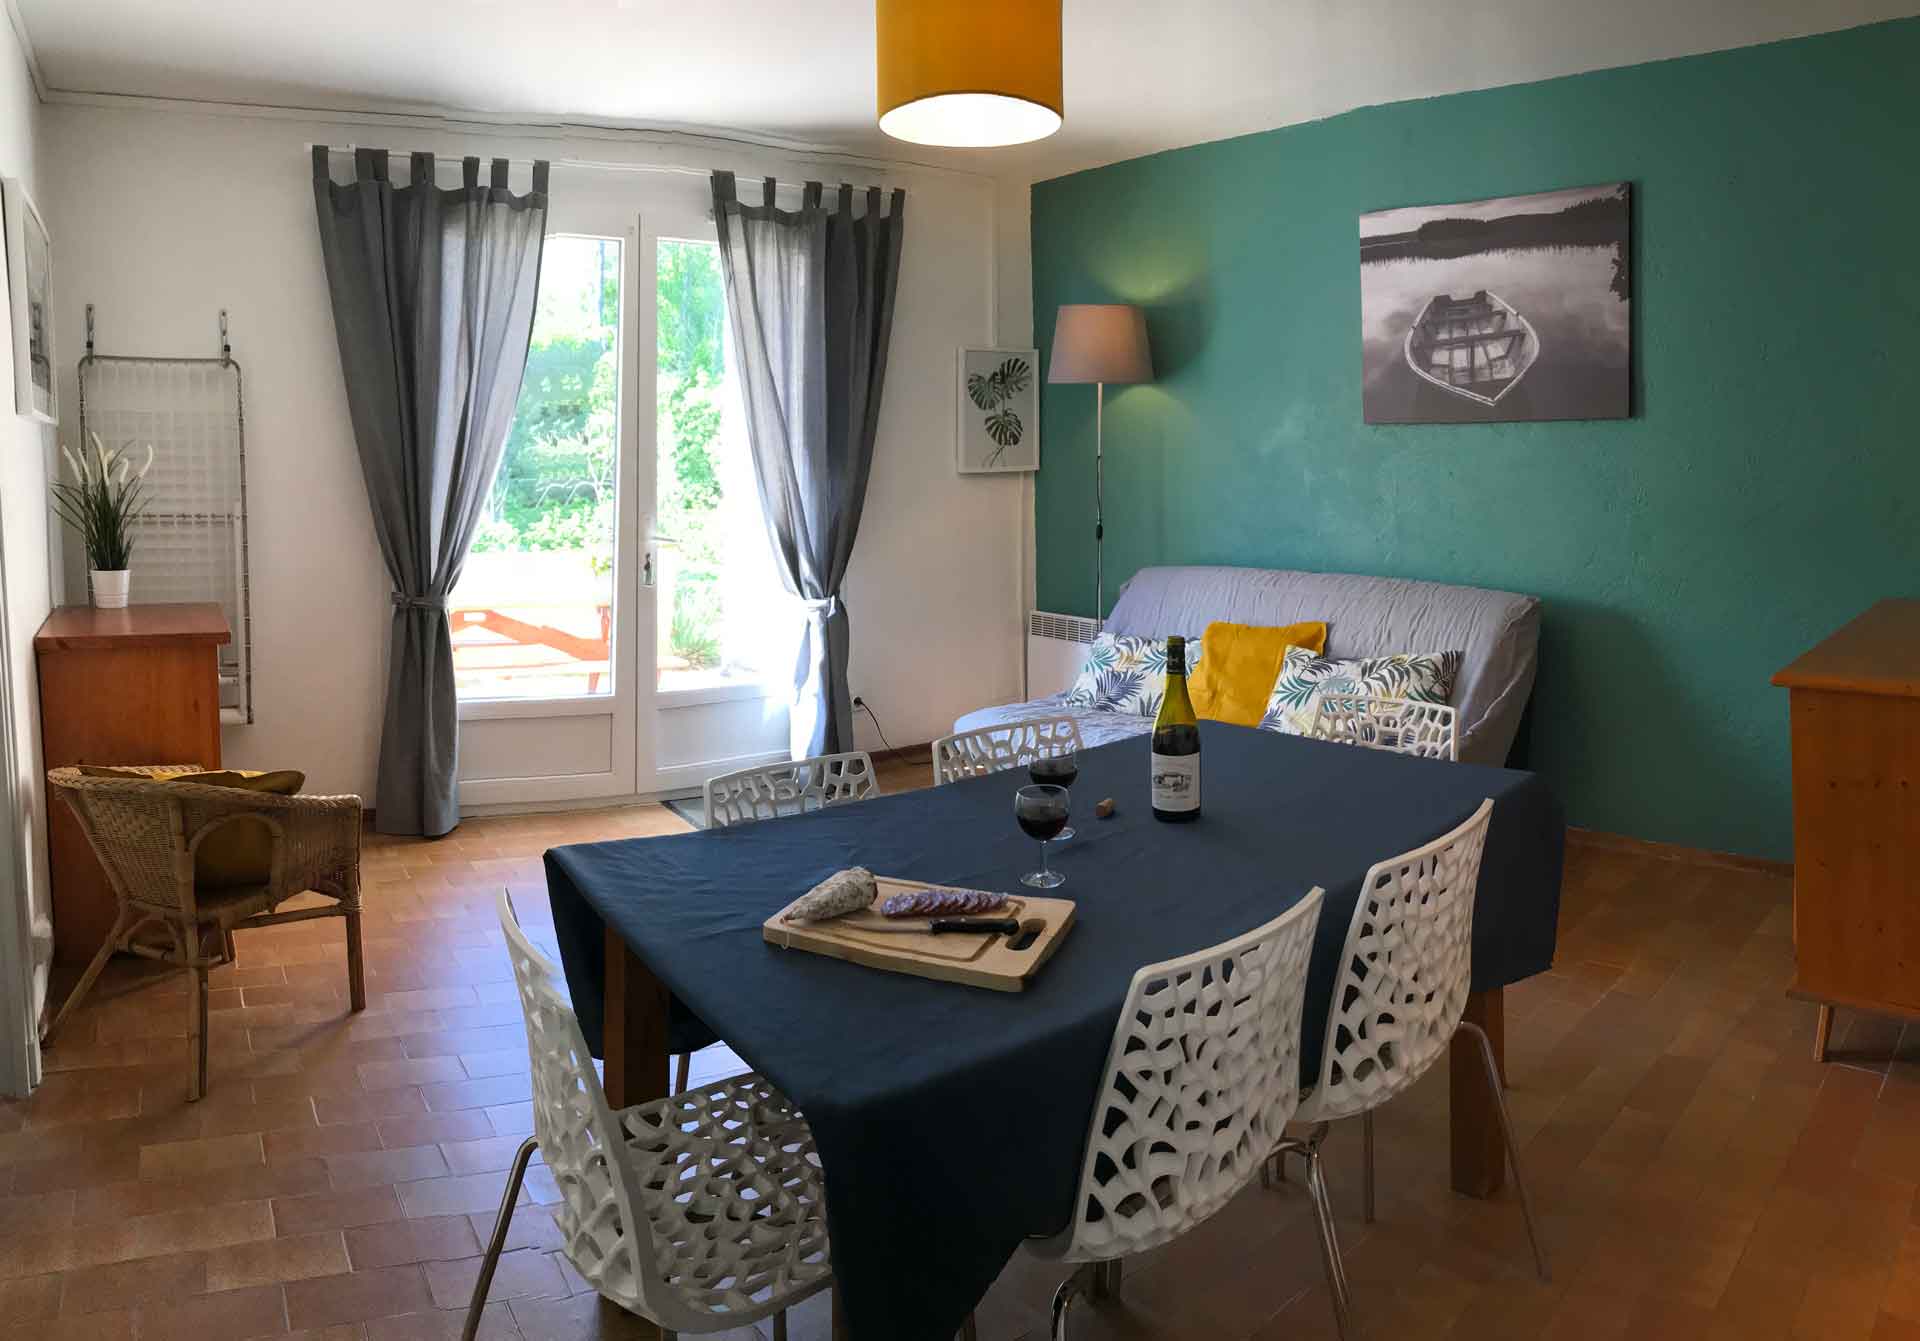 Salon salle à manger avec de jolis couleurs verte et moutarde, la double porte vitrée donne directement sur la terrasse ensoleillée